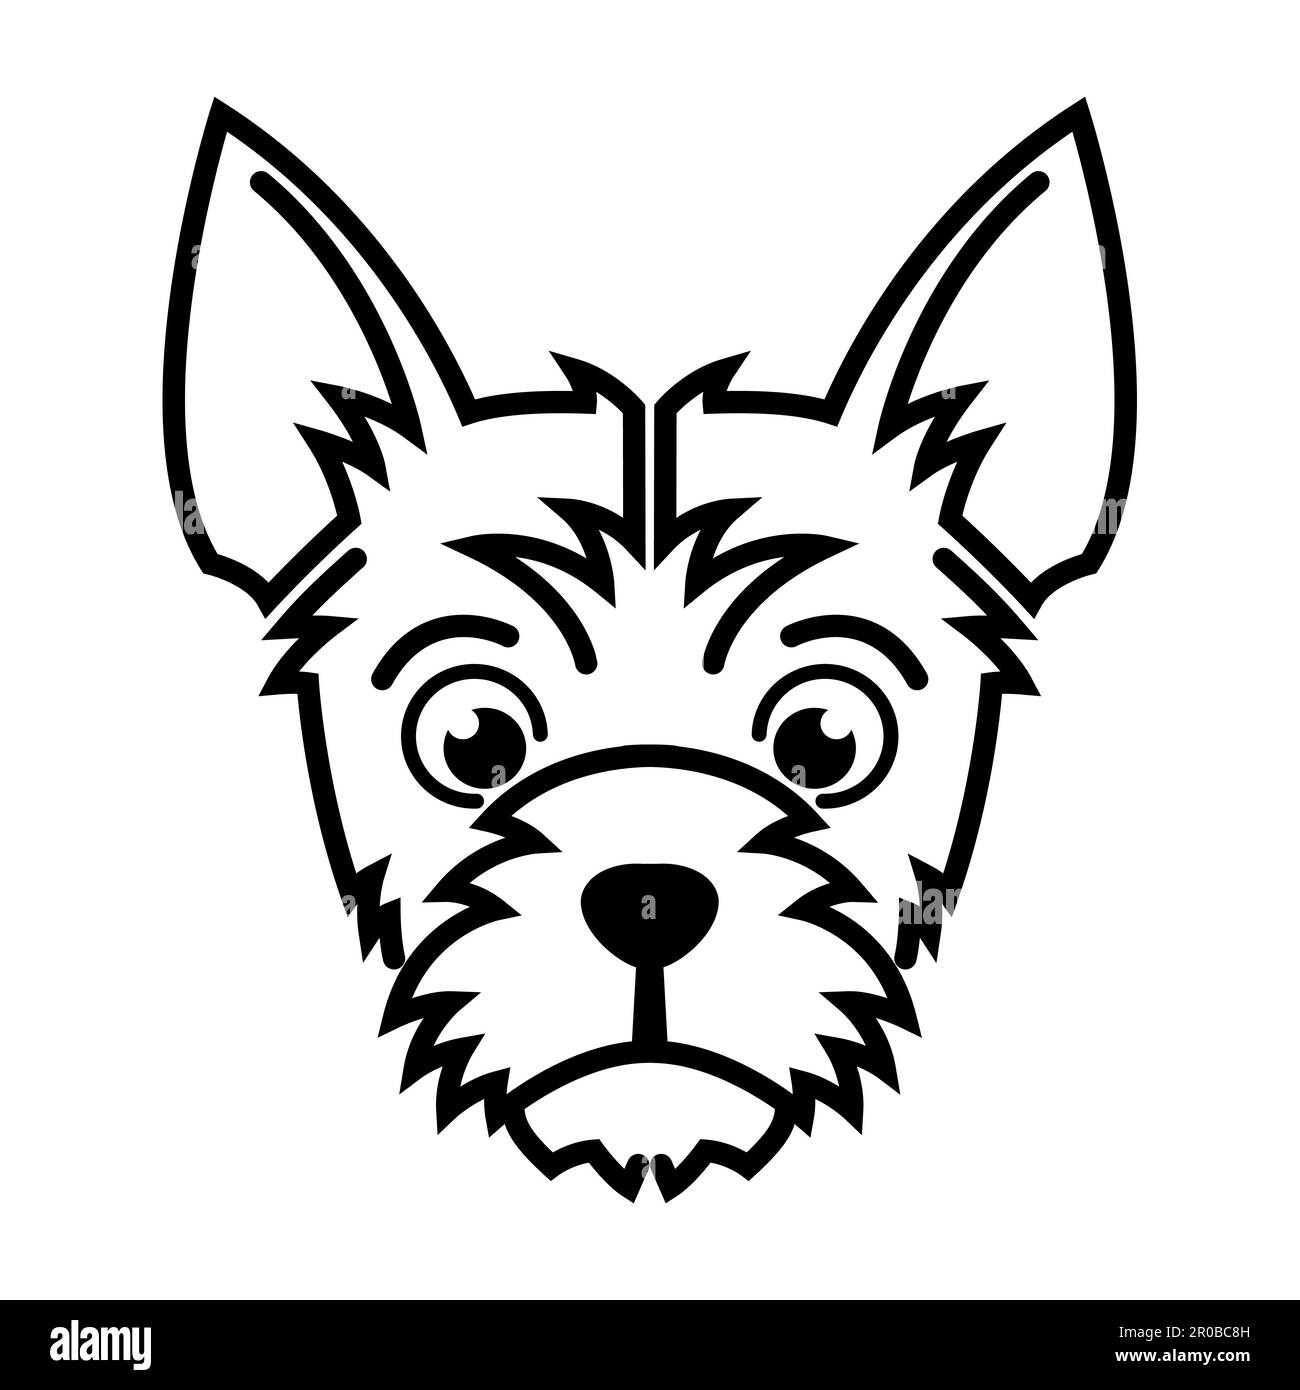 Noir et blanc ligne art de la tête de chien terrier bonne utilisation pour symbole mascotte icône avatar tatouage T logo de chemise ou n'importe quel design Illustration de Vecteur